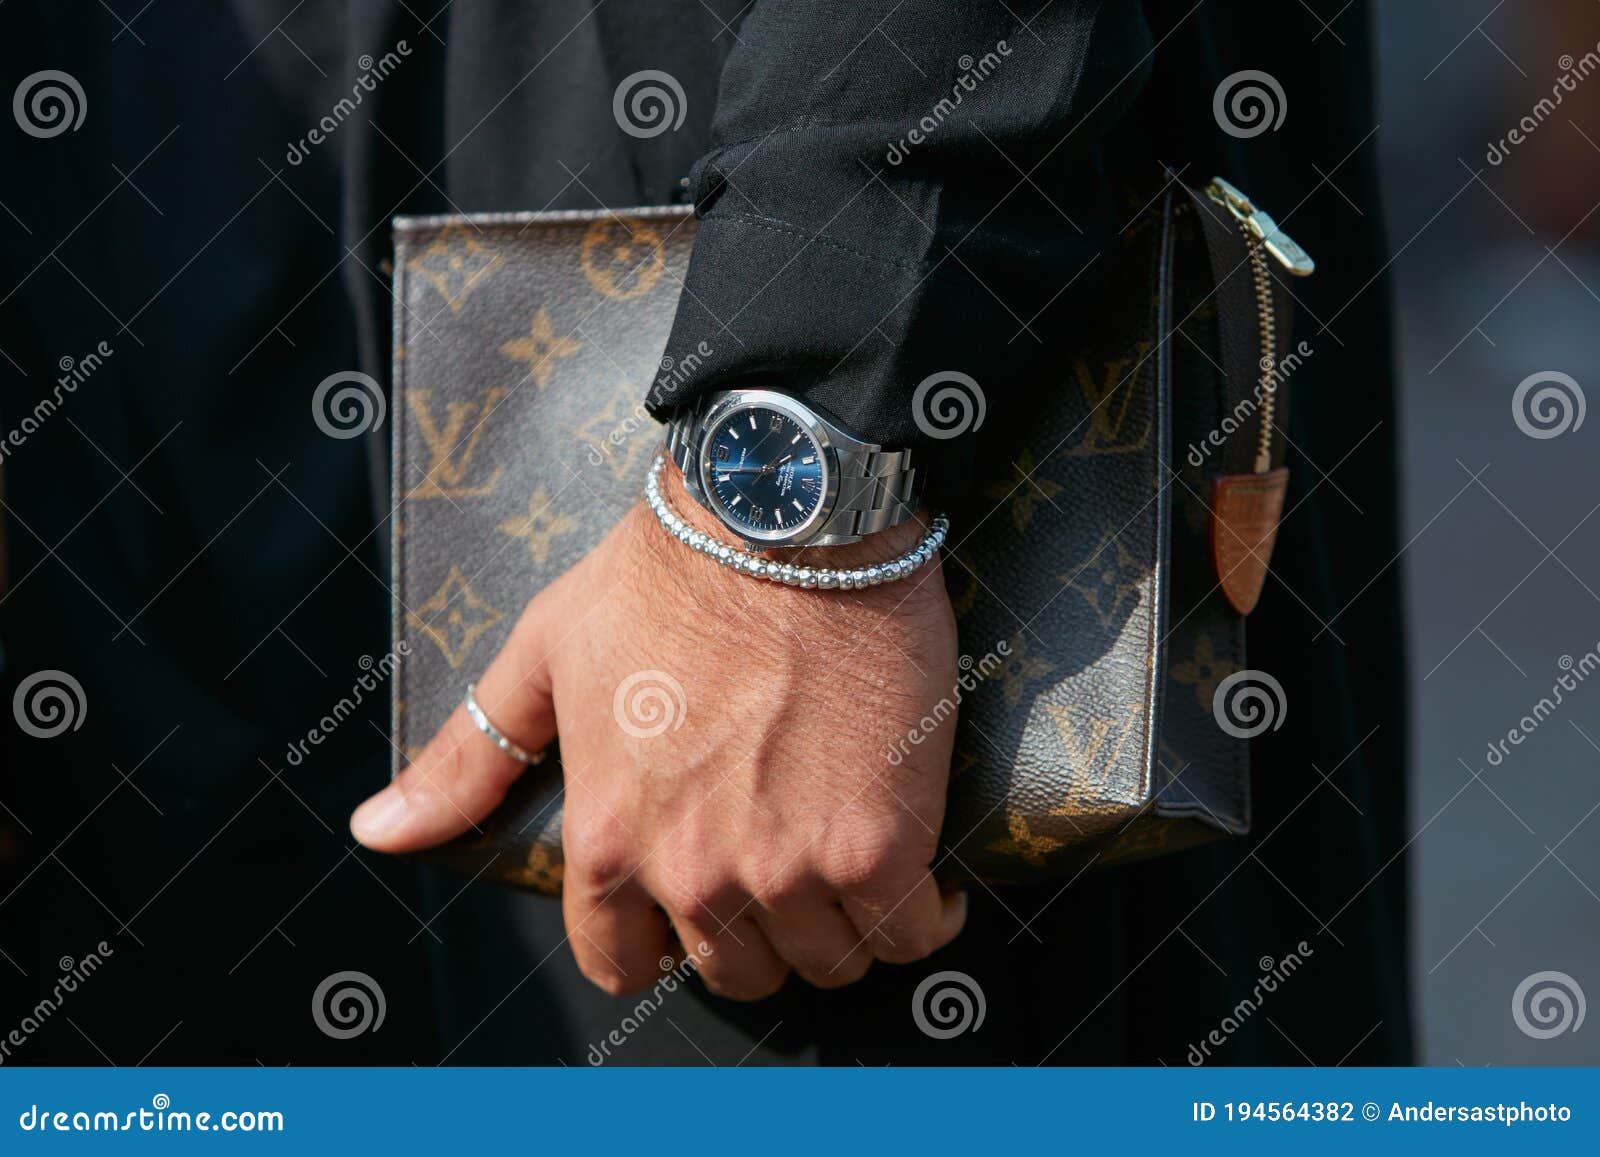 Stil mit Louis Vuitton und Rolex